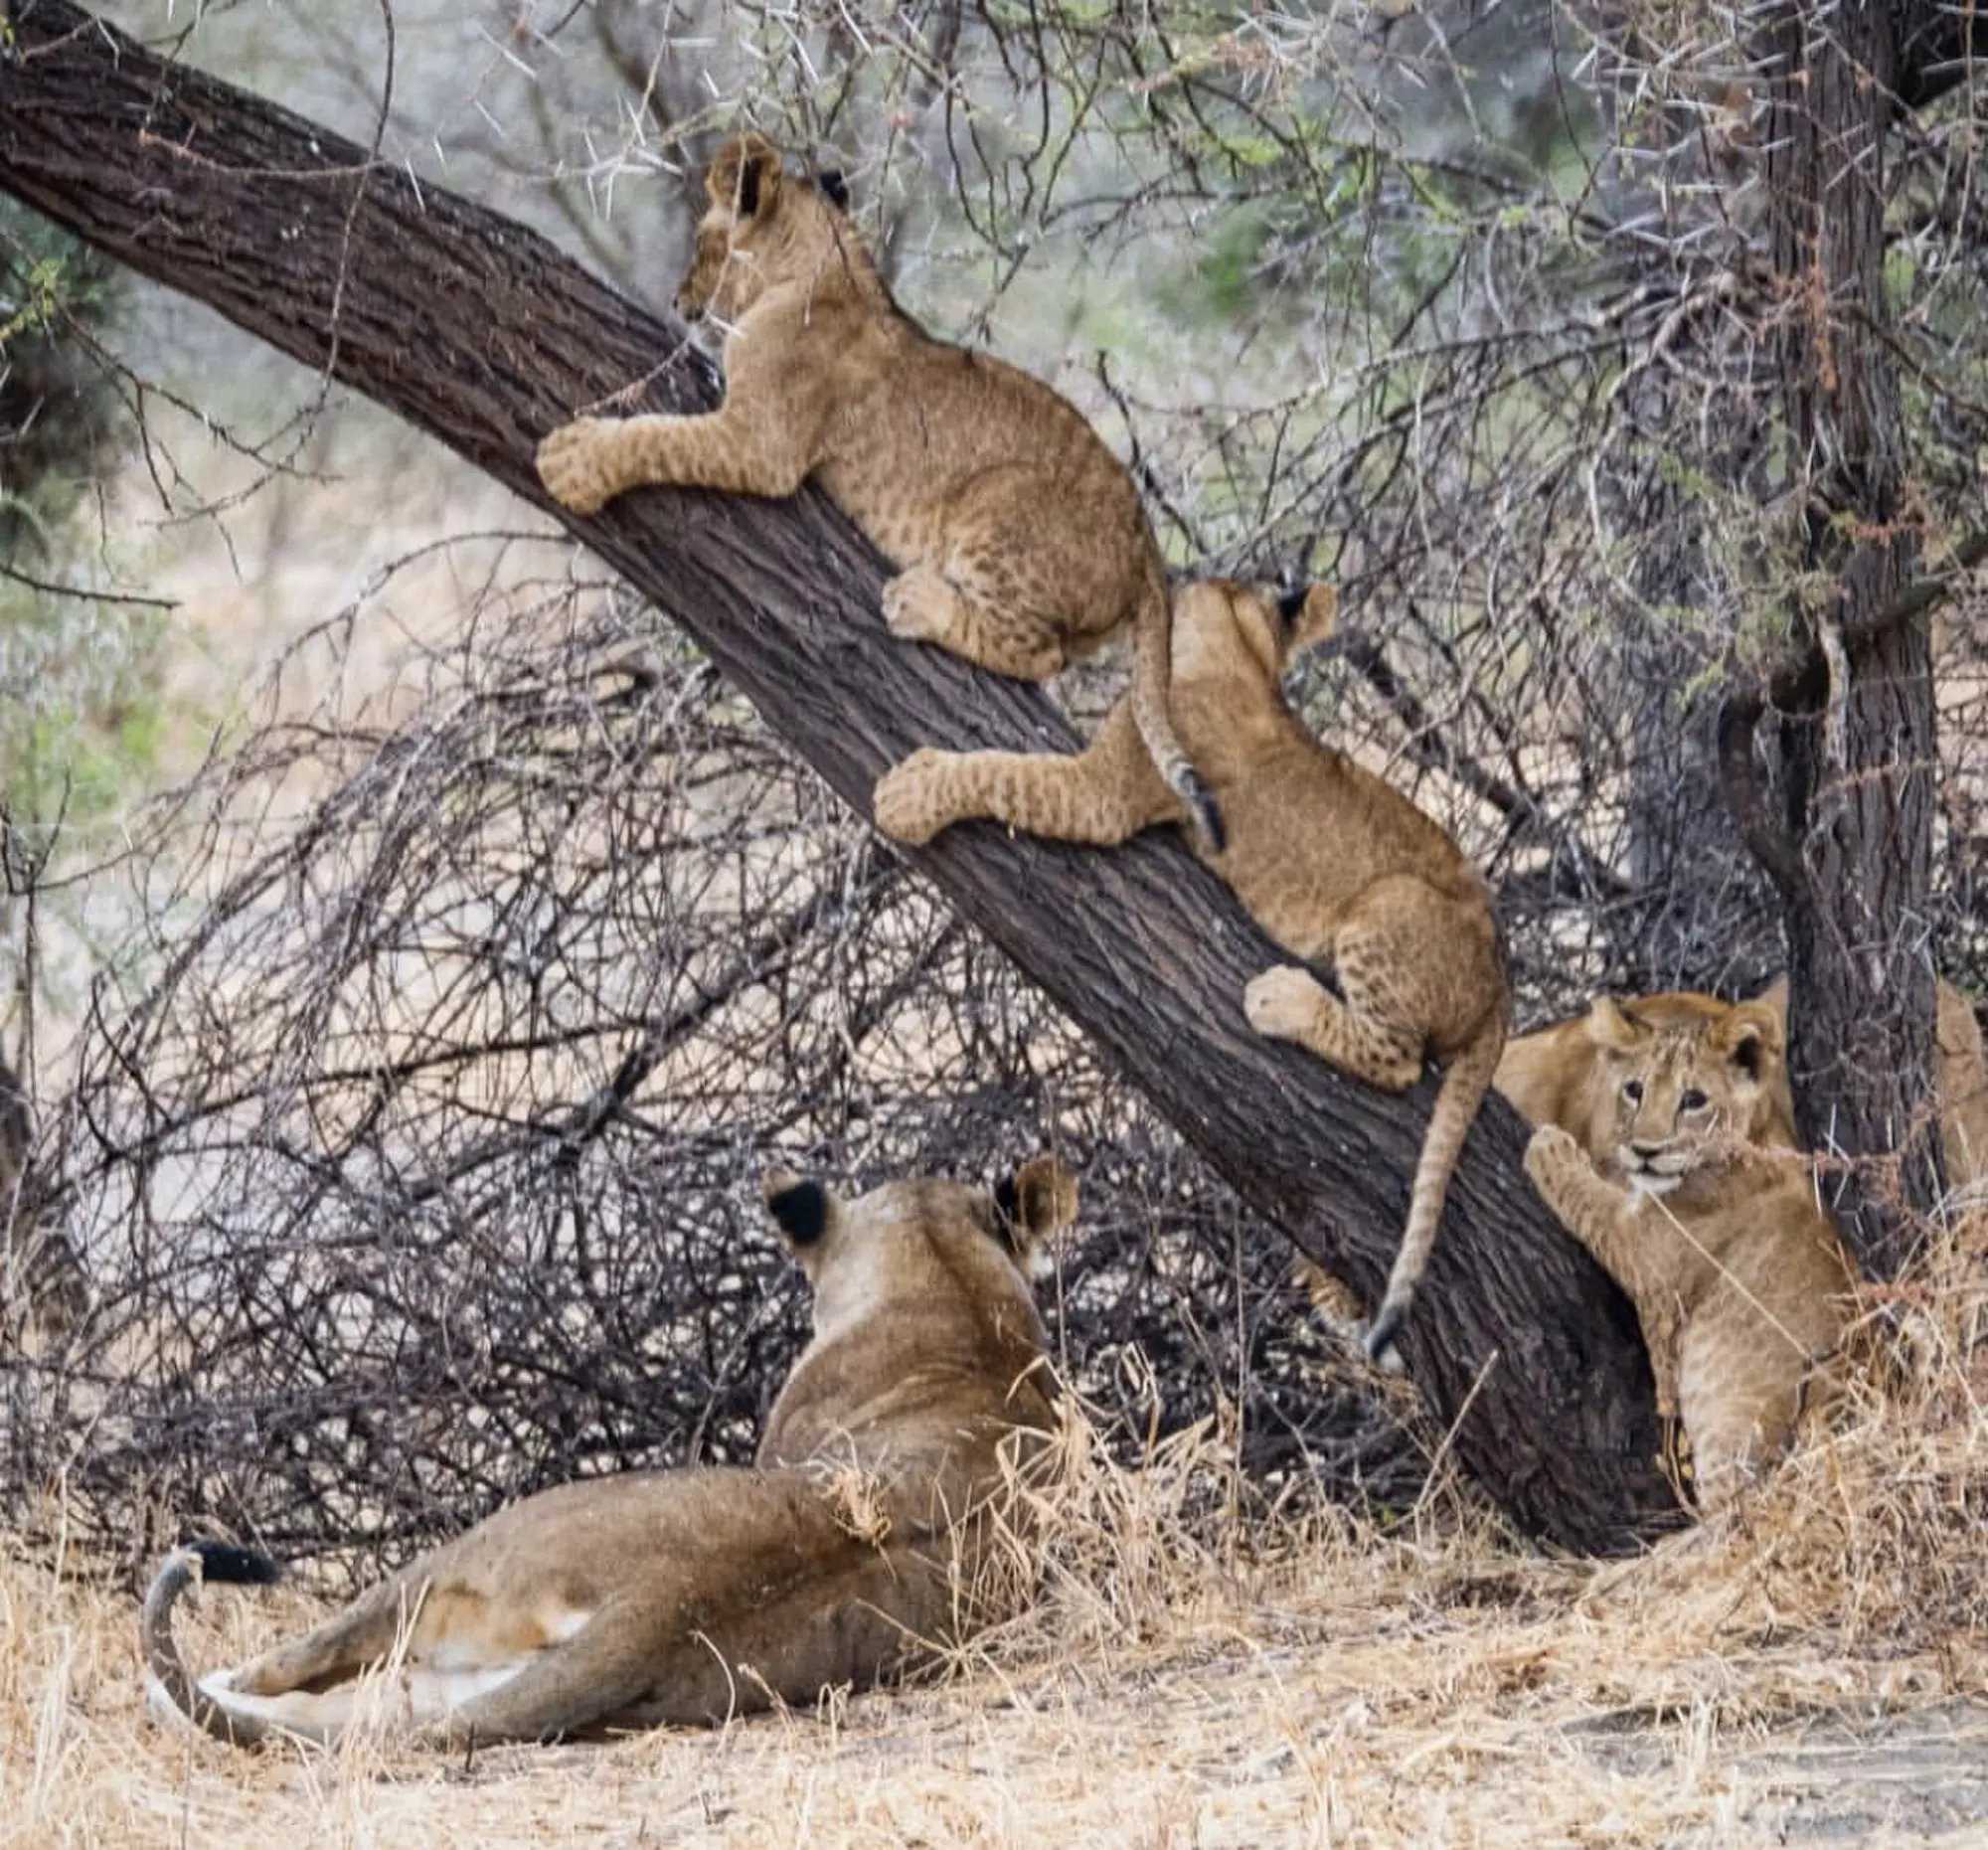 Lions spotted near Chem Chem safari Lodge